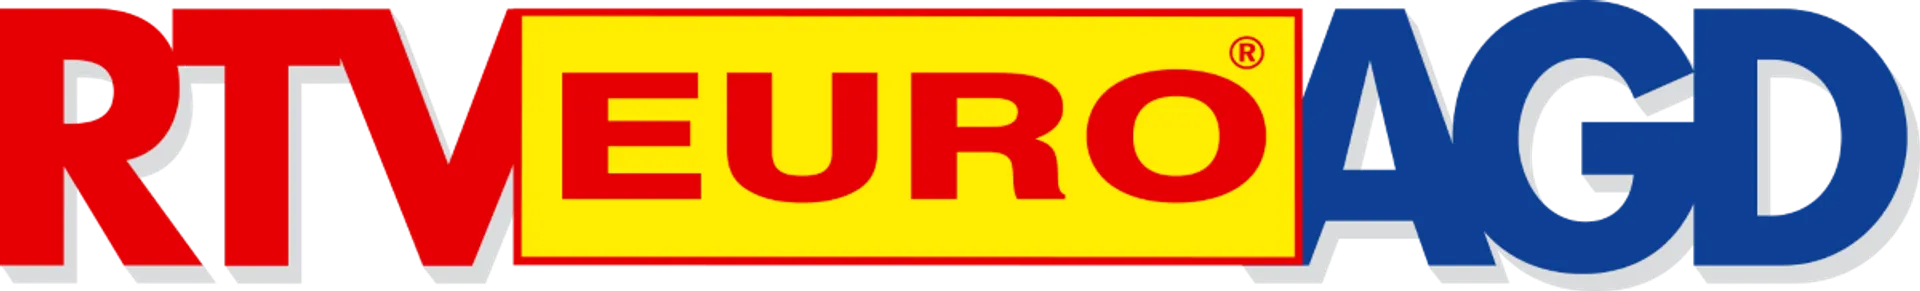 RTV EURO AGD logo